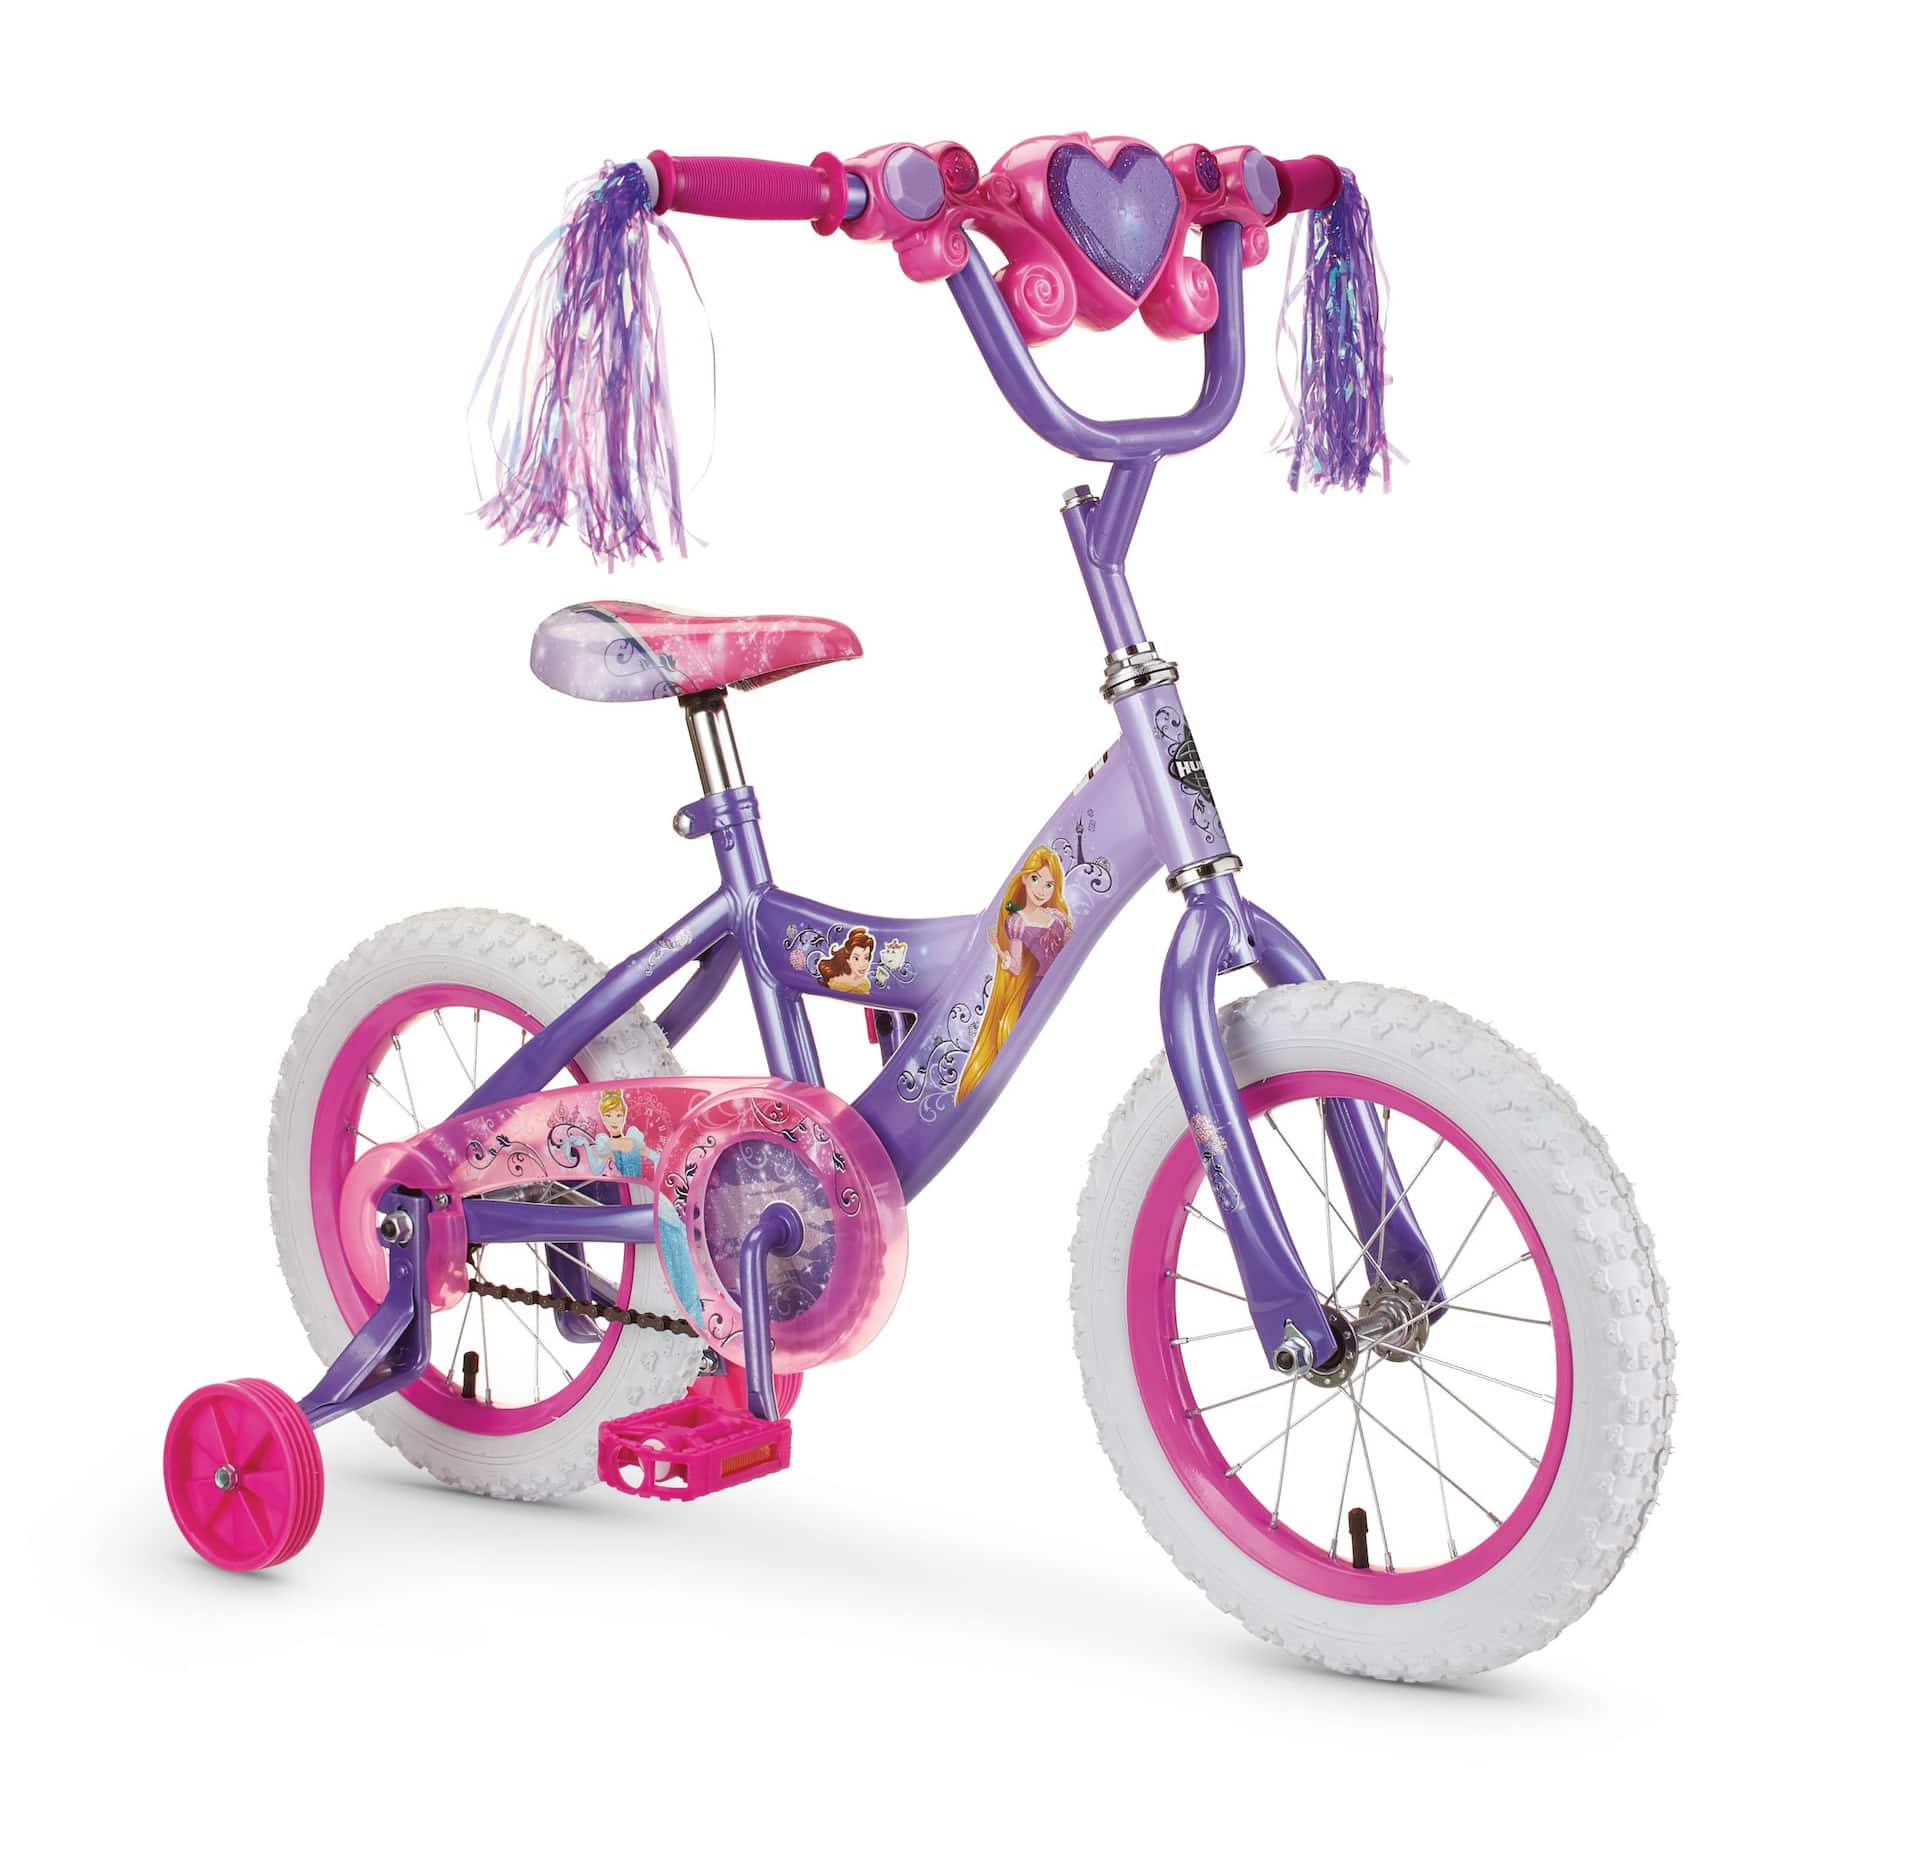 Petites roues stabilisatrices lumineuses vélo enfant